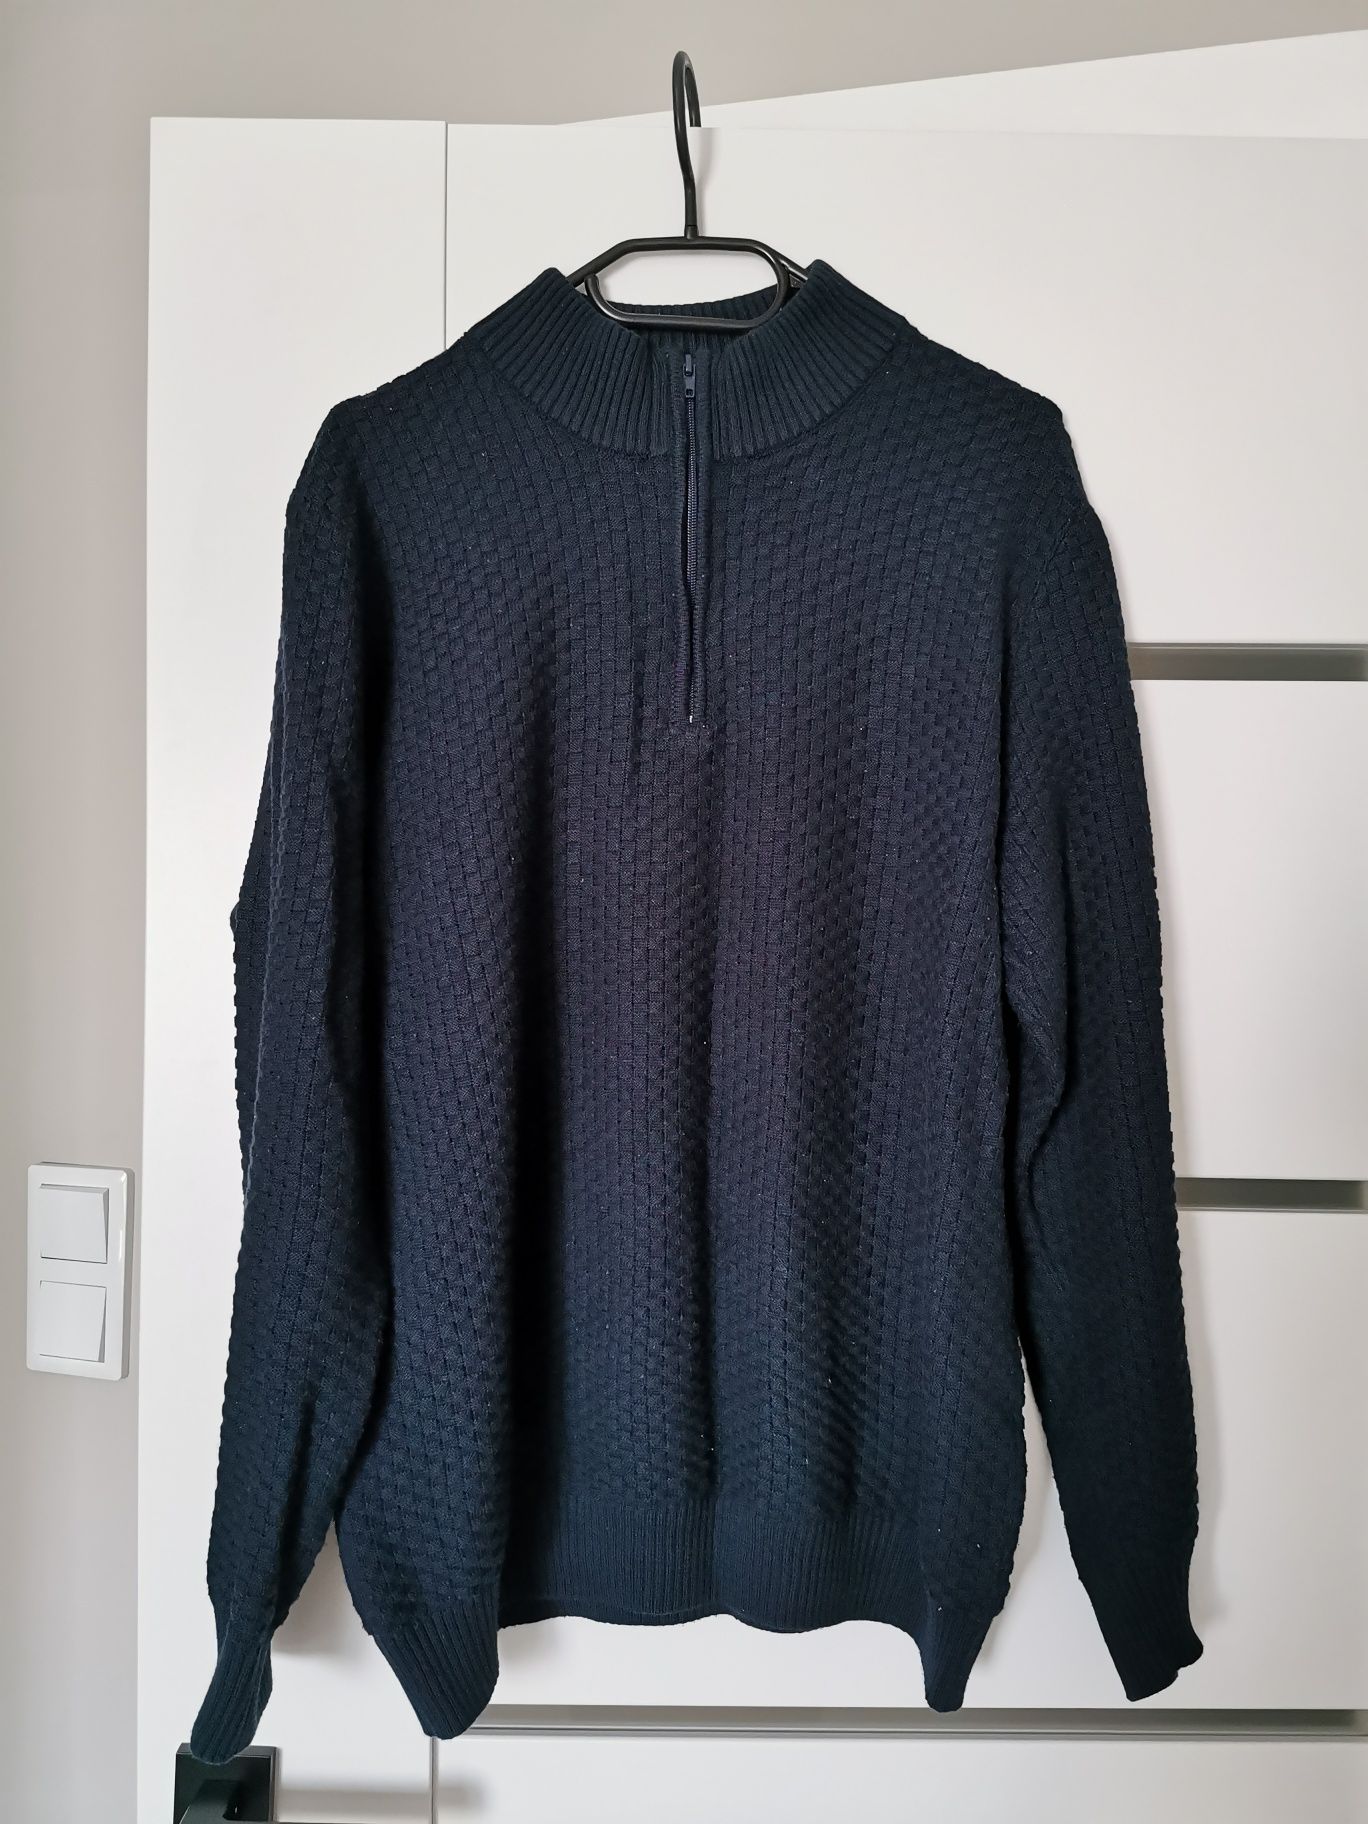 Granatowy, męski sweter XL marki Venerdi